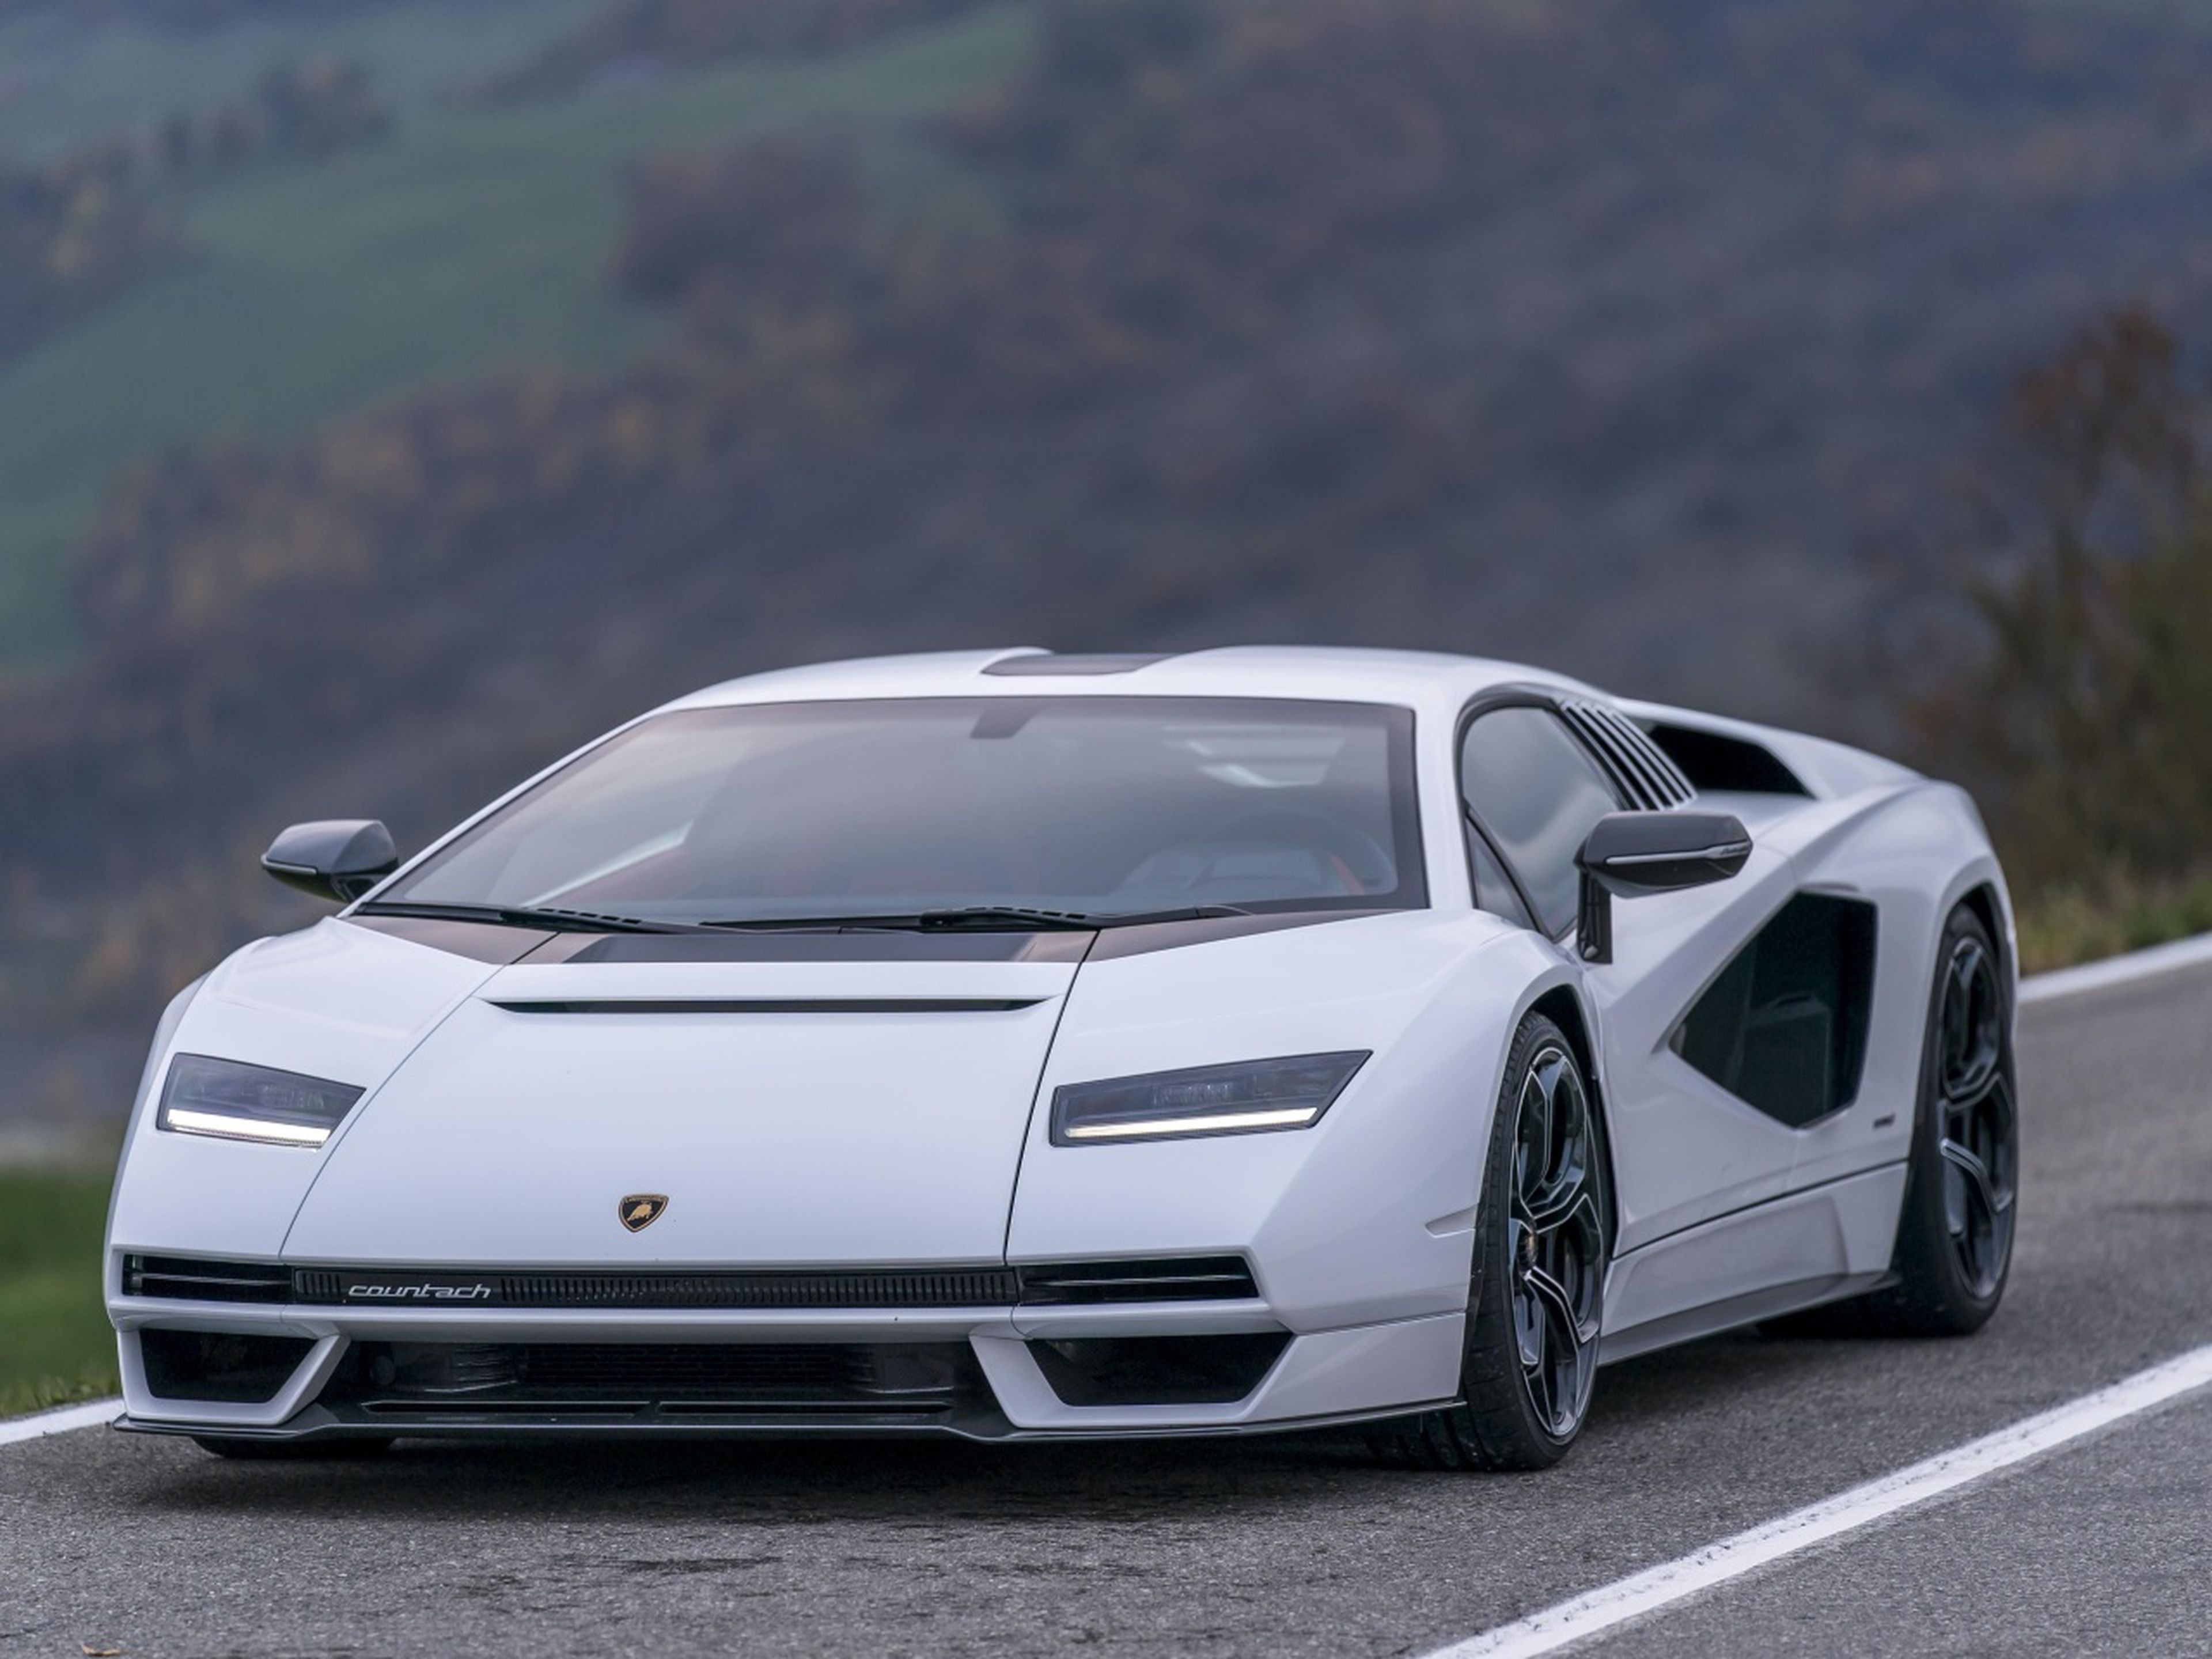 Lamborghini Countach carretera